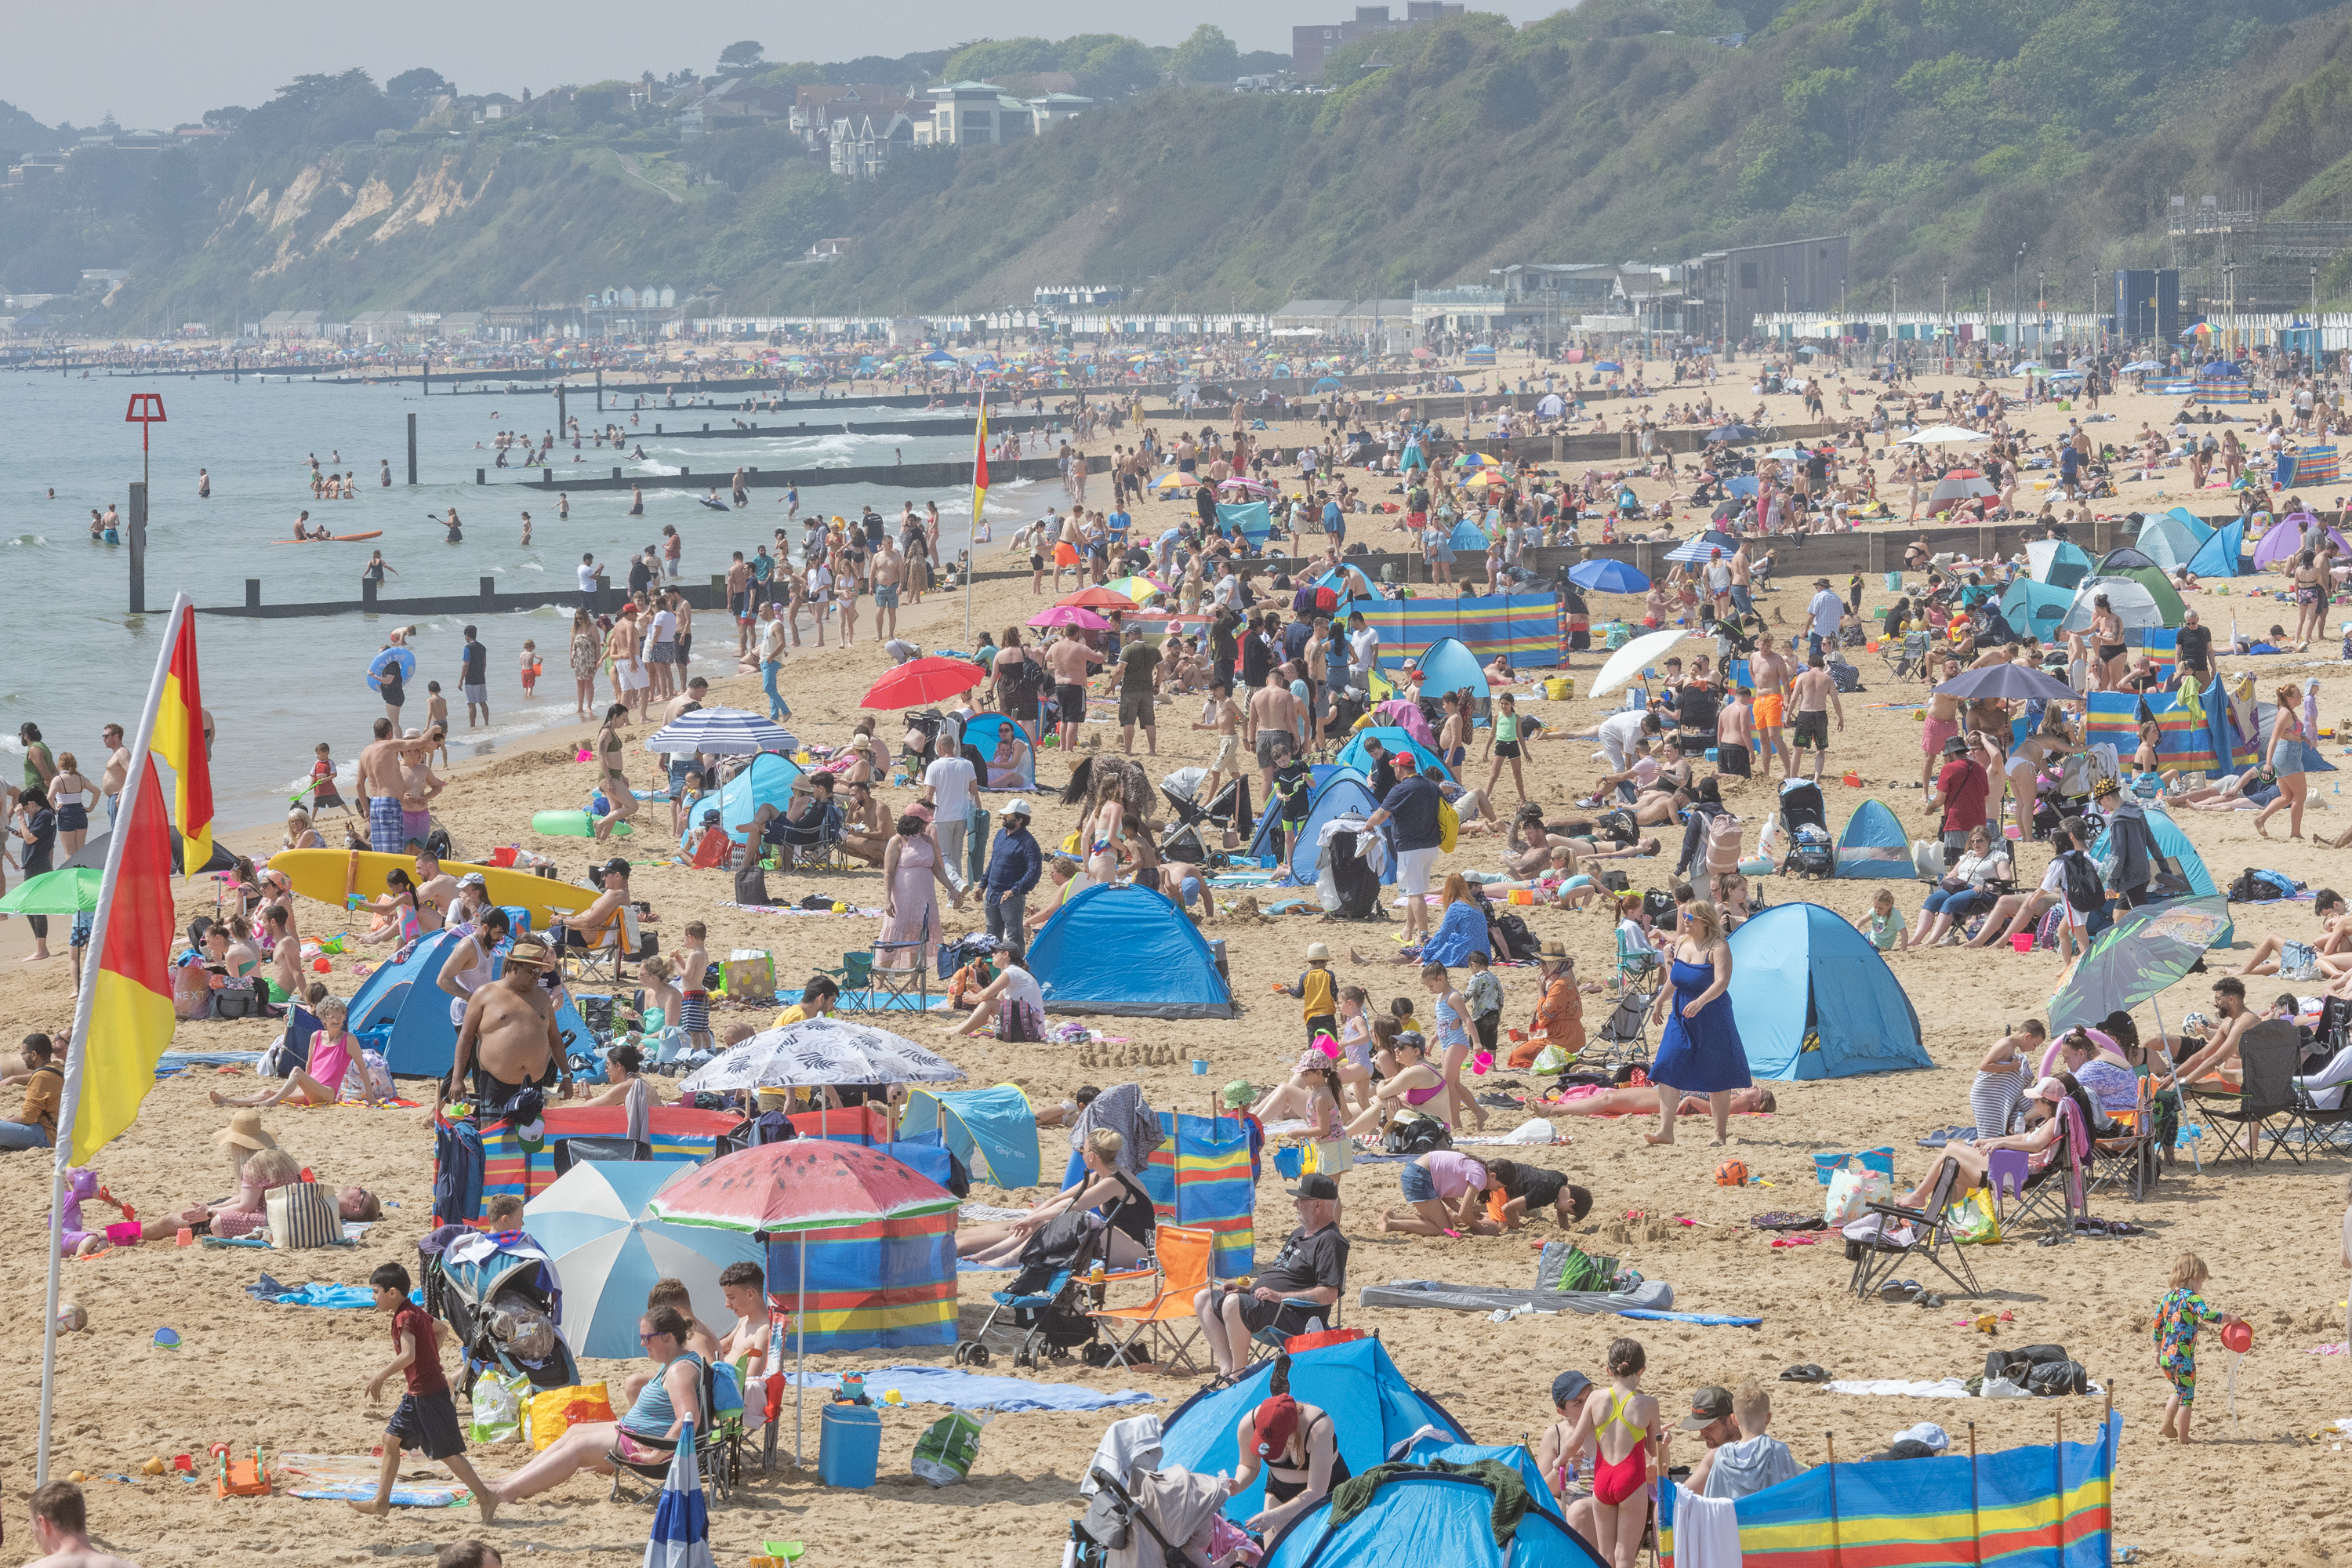 Der Strand von Bournemouth war heute Nachmittag überfüllt